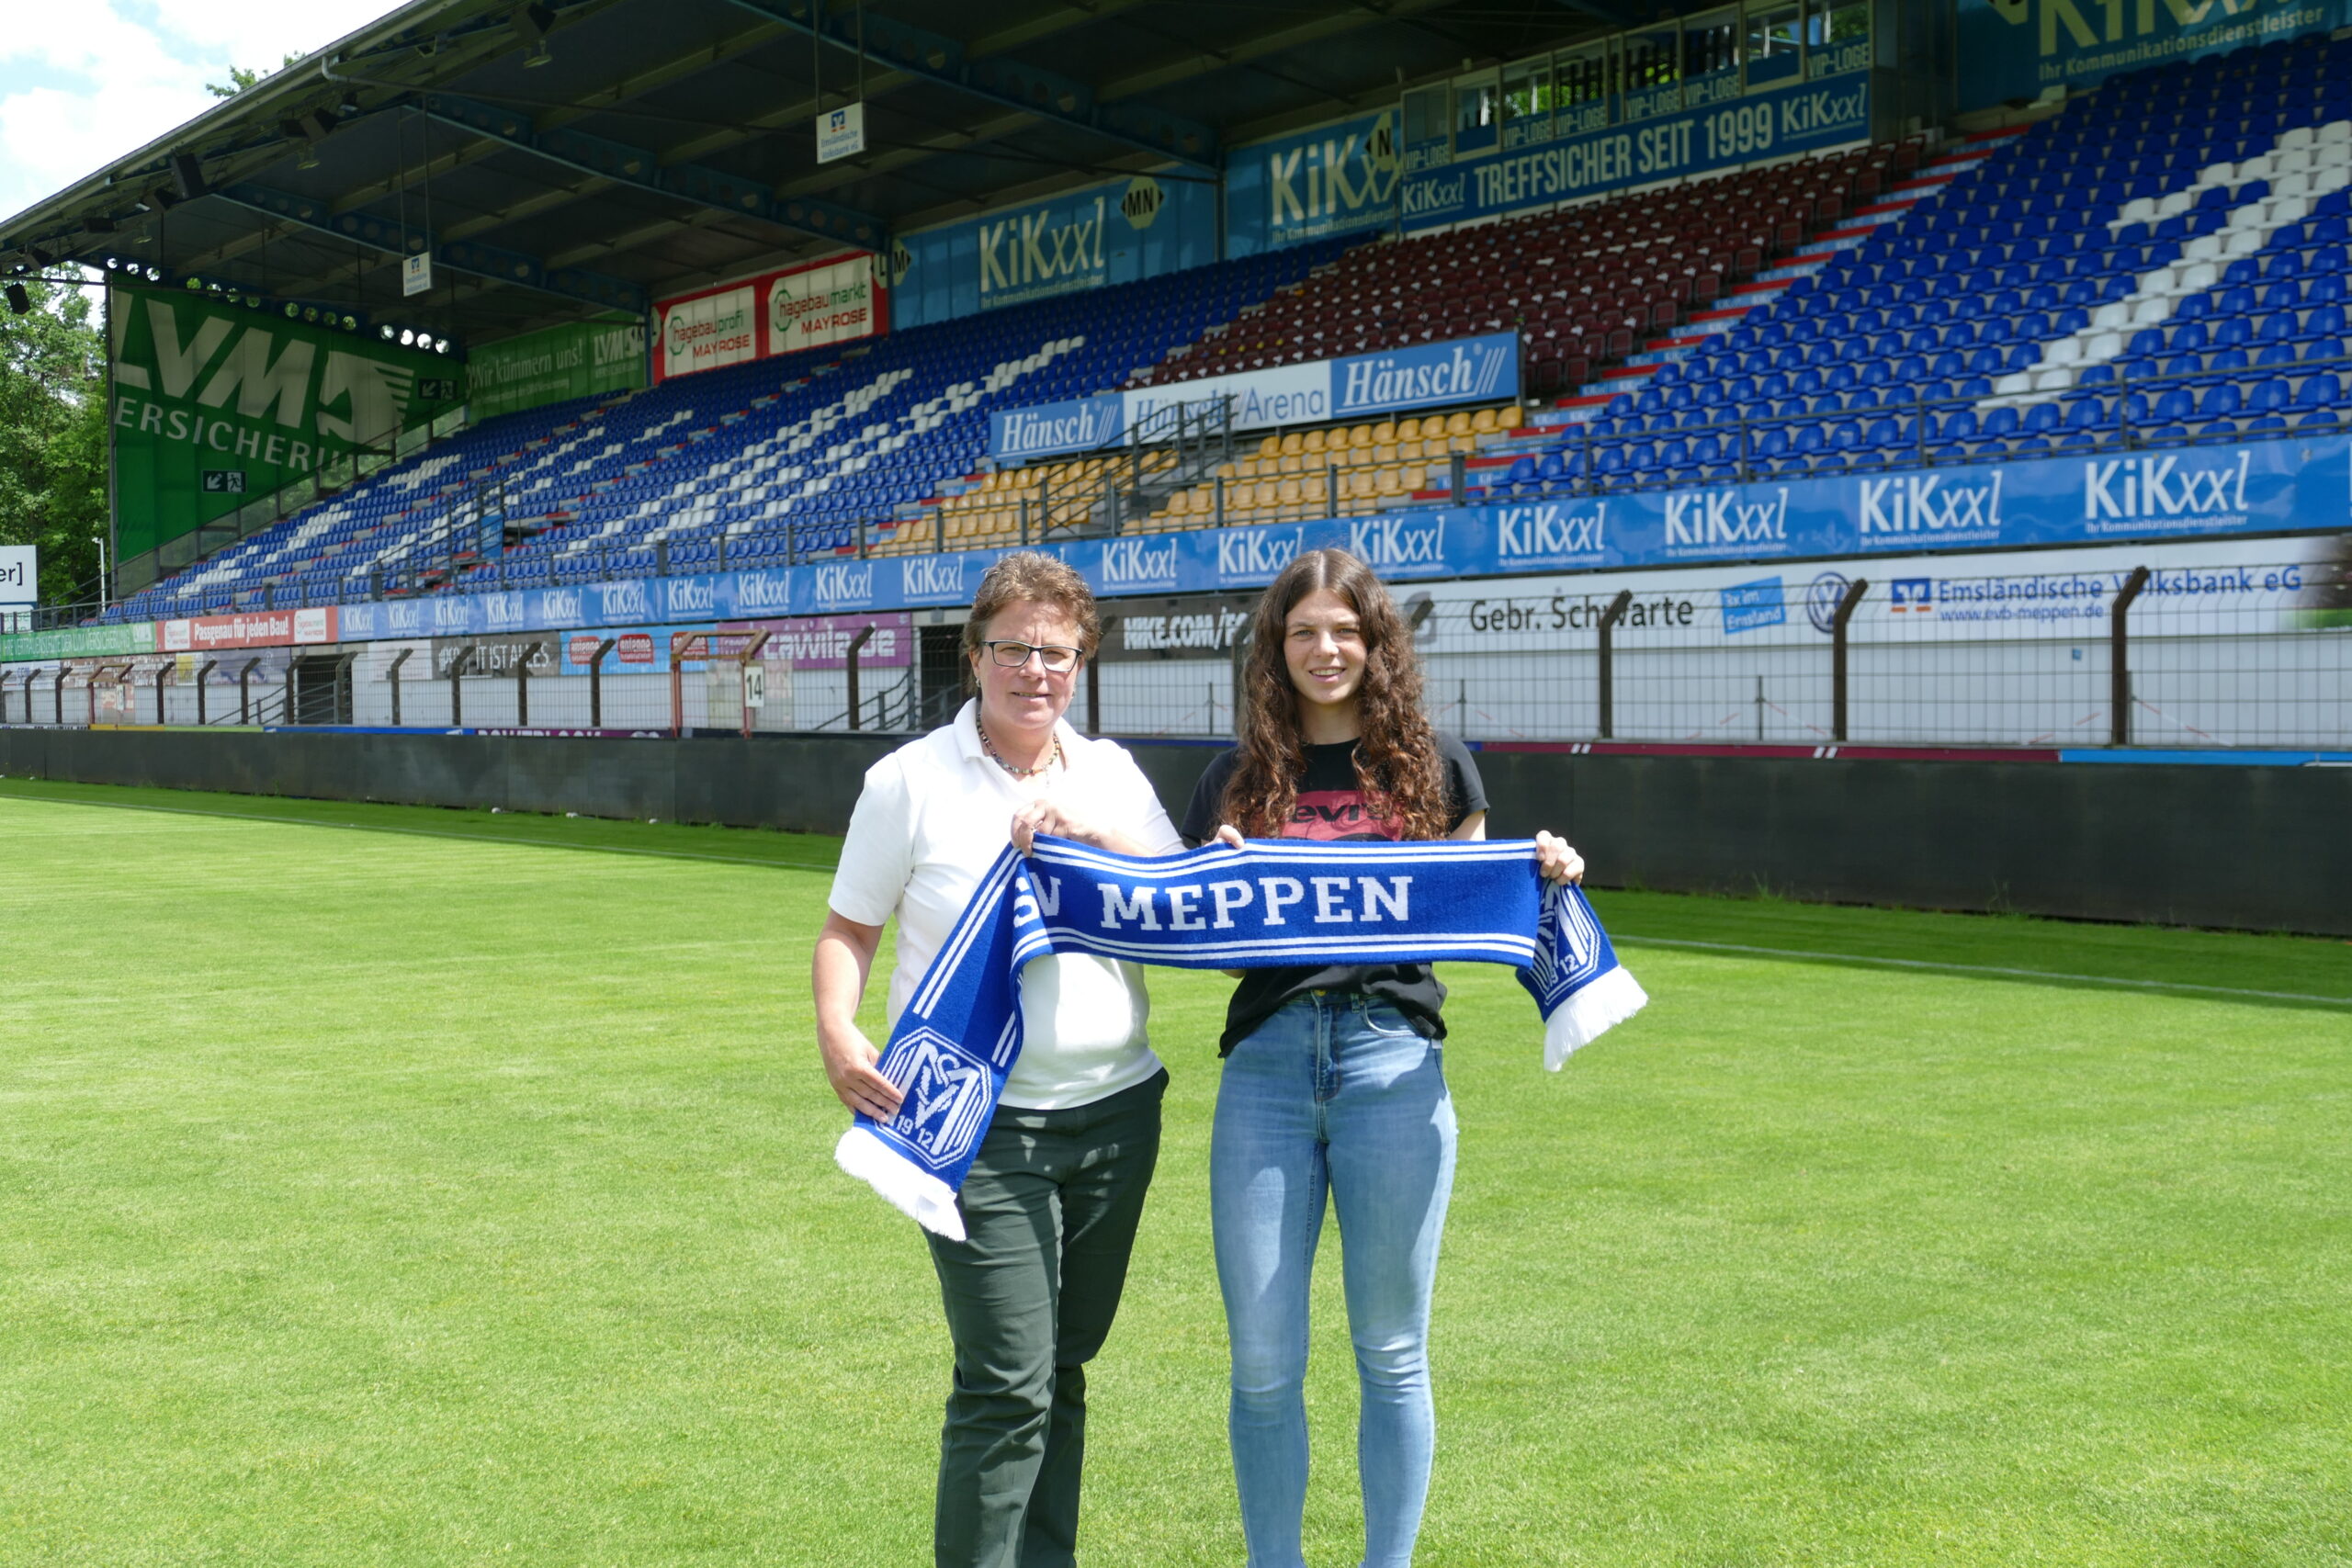 Maria Reisinger (Sportliche Leiterin) und Nina Kossen freuen sich auf die kommende Saison.
Foto: SV Meppen